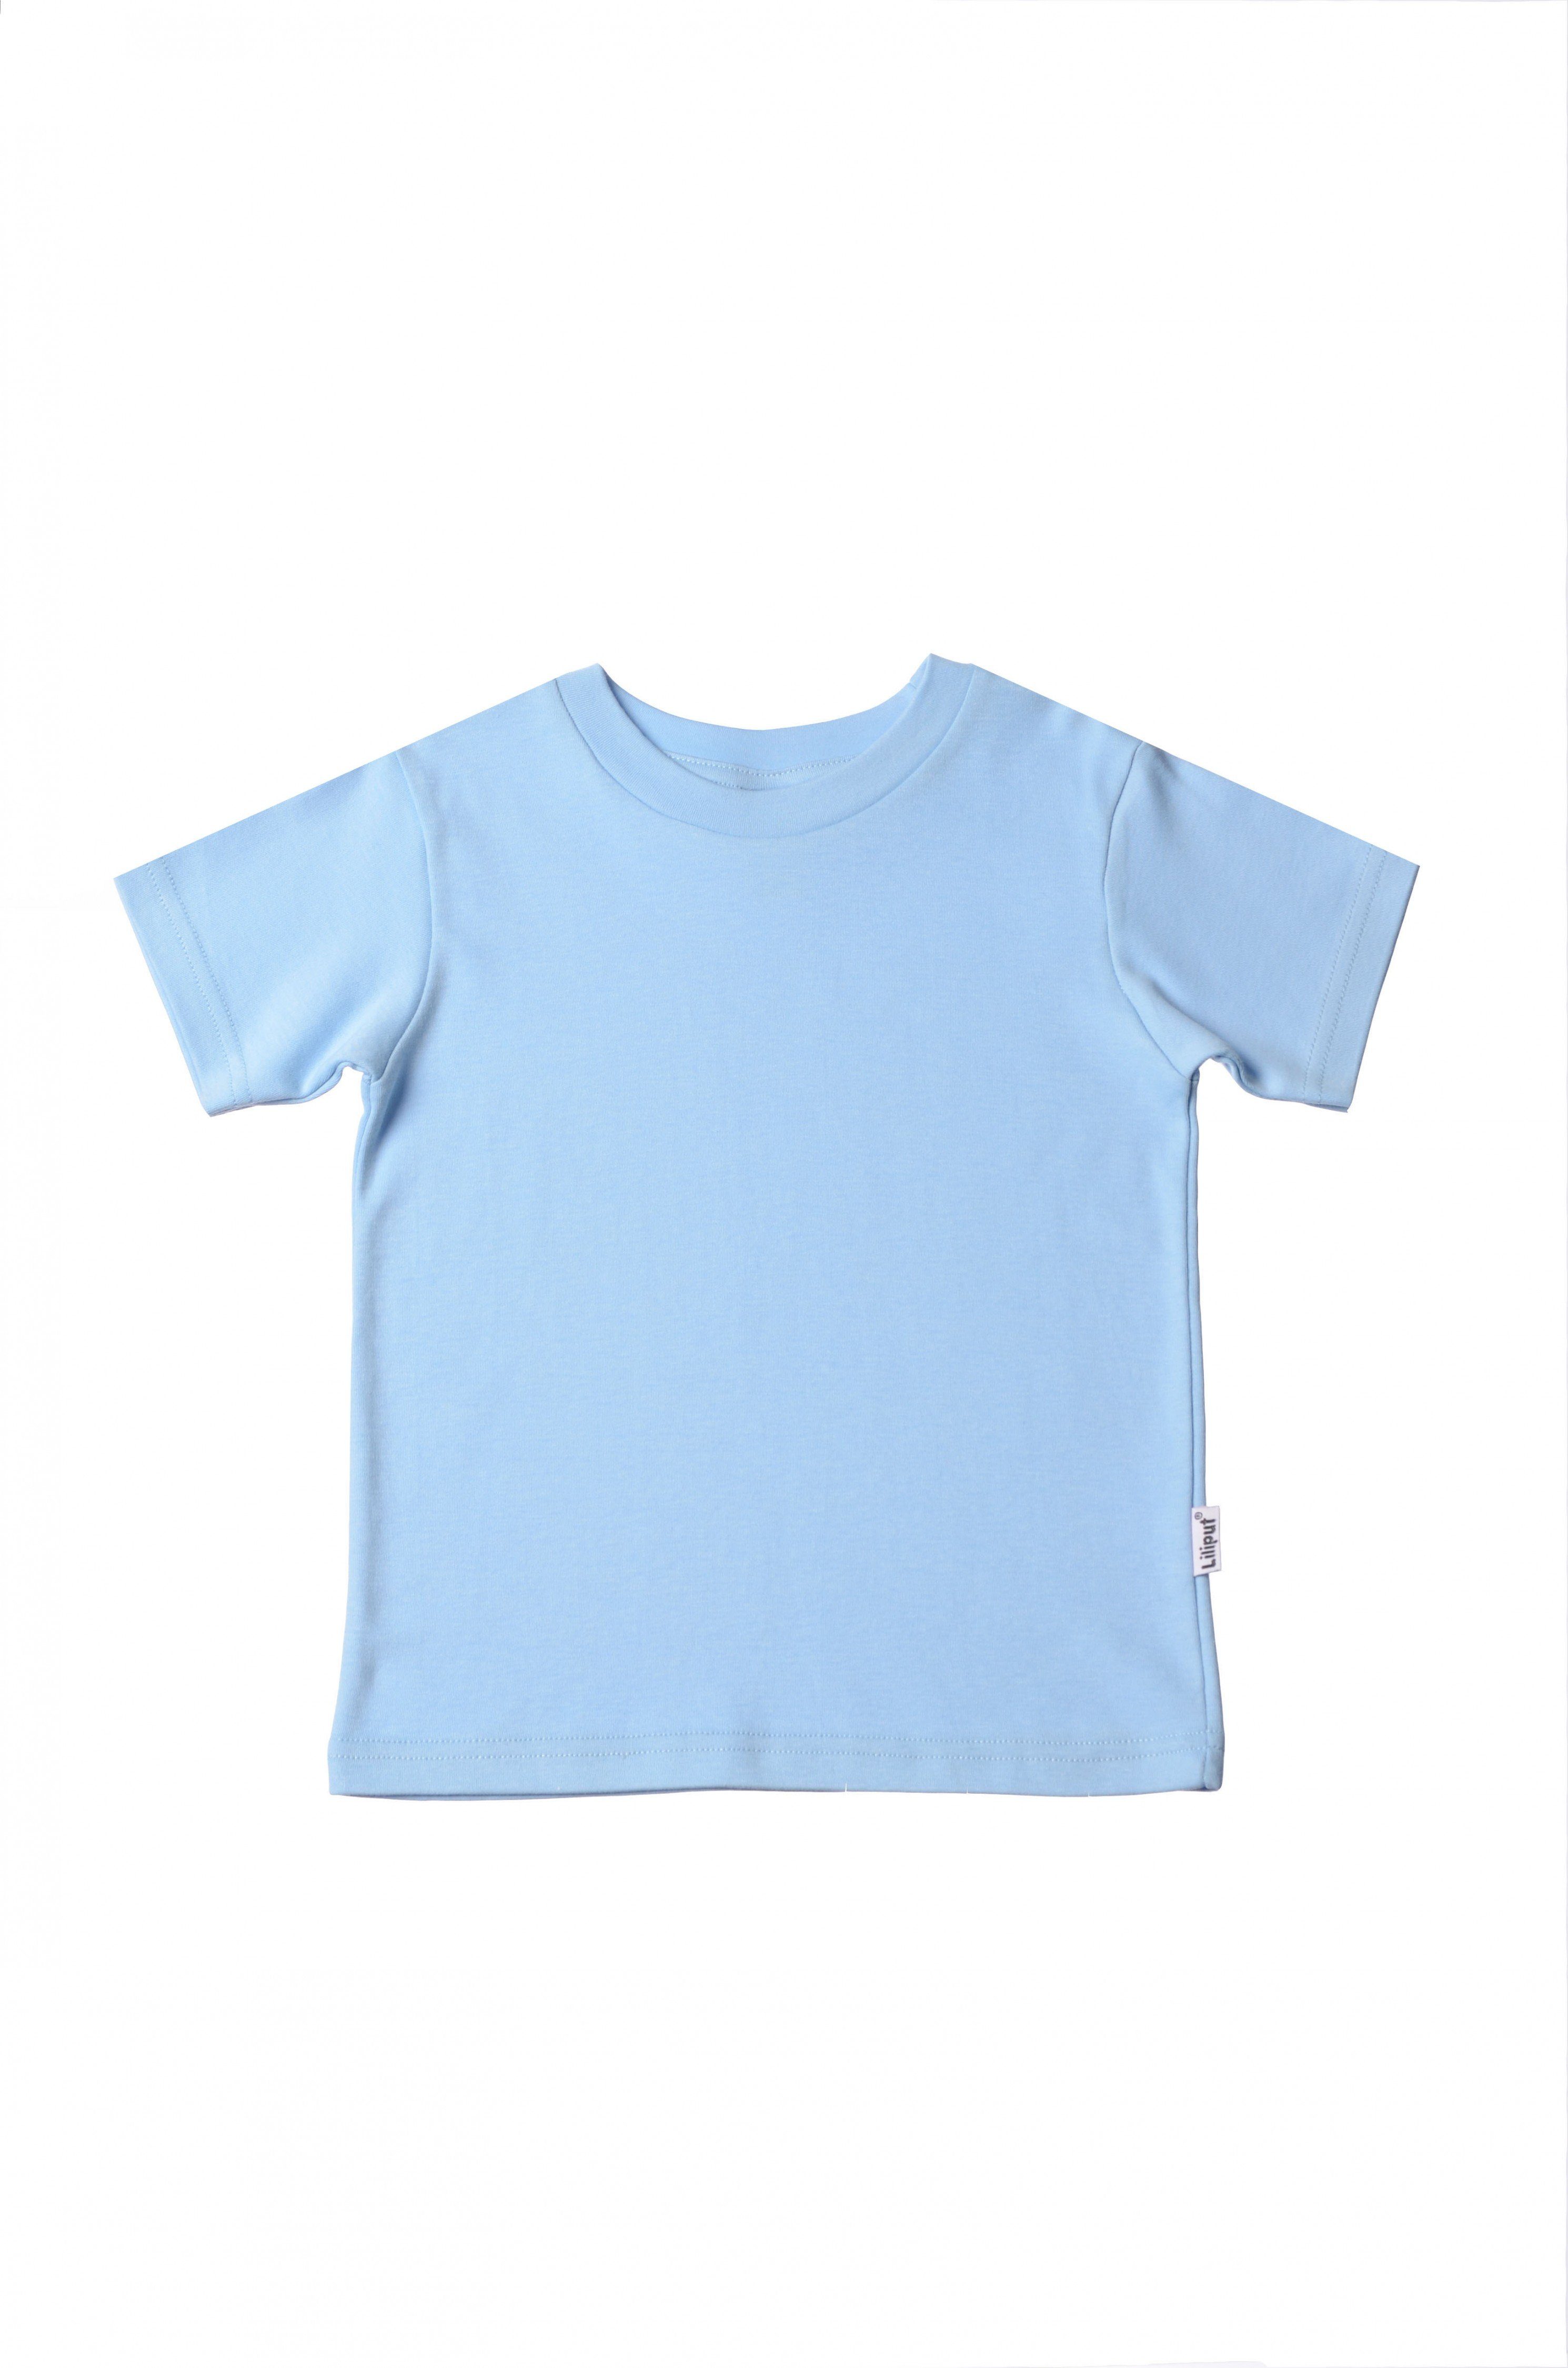 Liliput T-Shirt in niedlichem hellblau Design